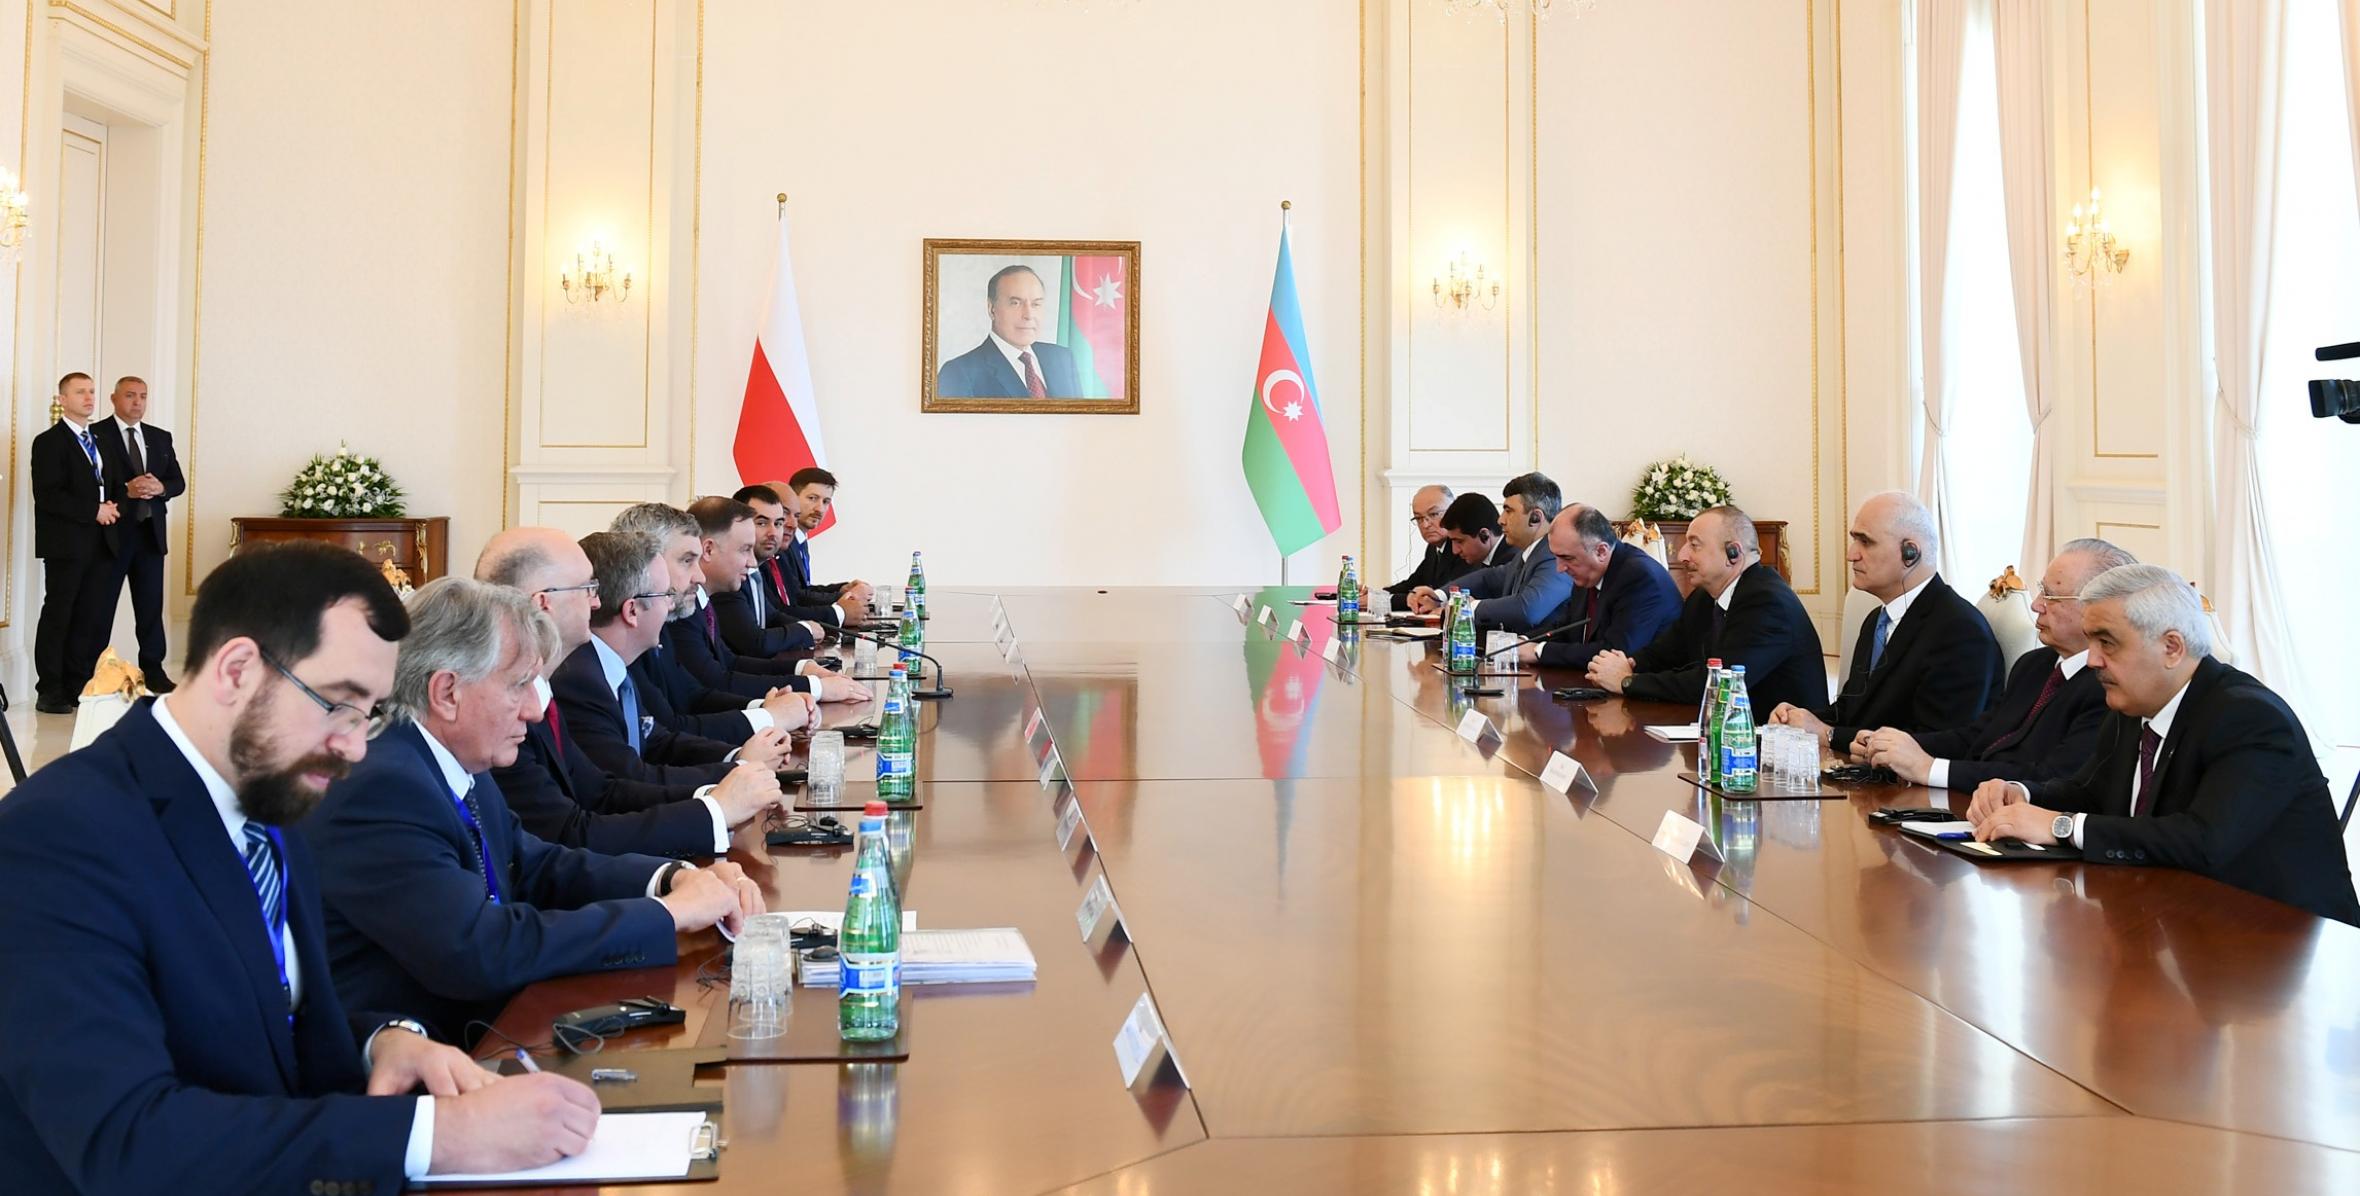 Состоялась встреча президентов Азербайджана и Польши в расширенном составе